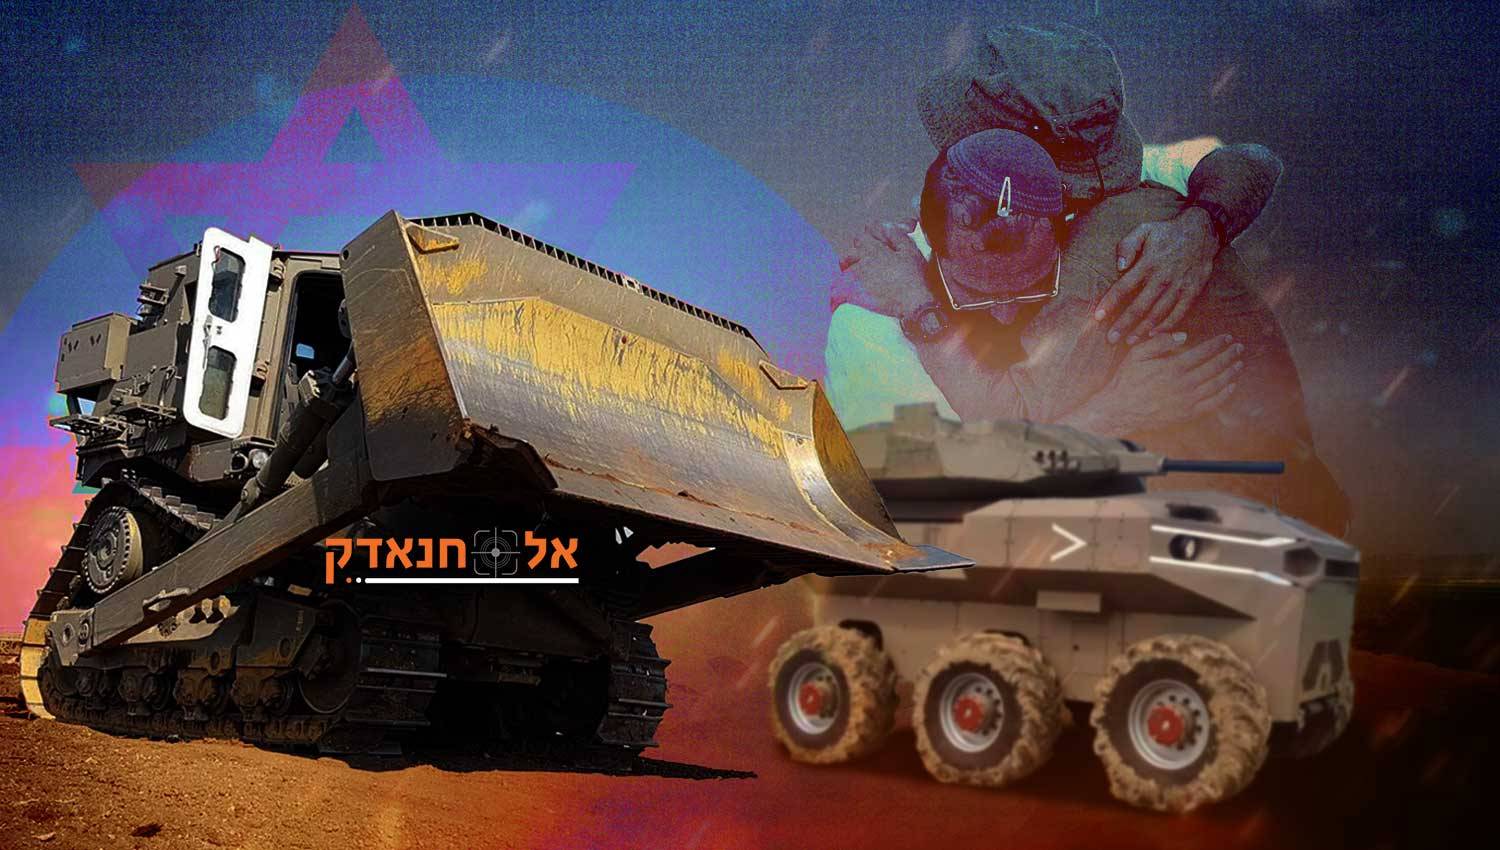 הצבא הישראלי מבקש מערכות בלתי מאוישות